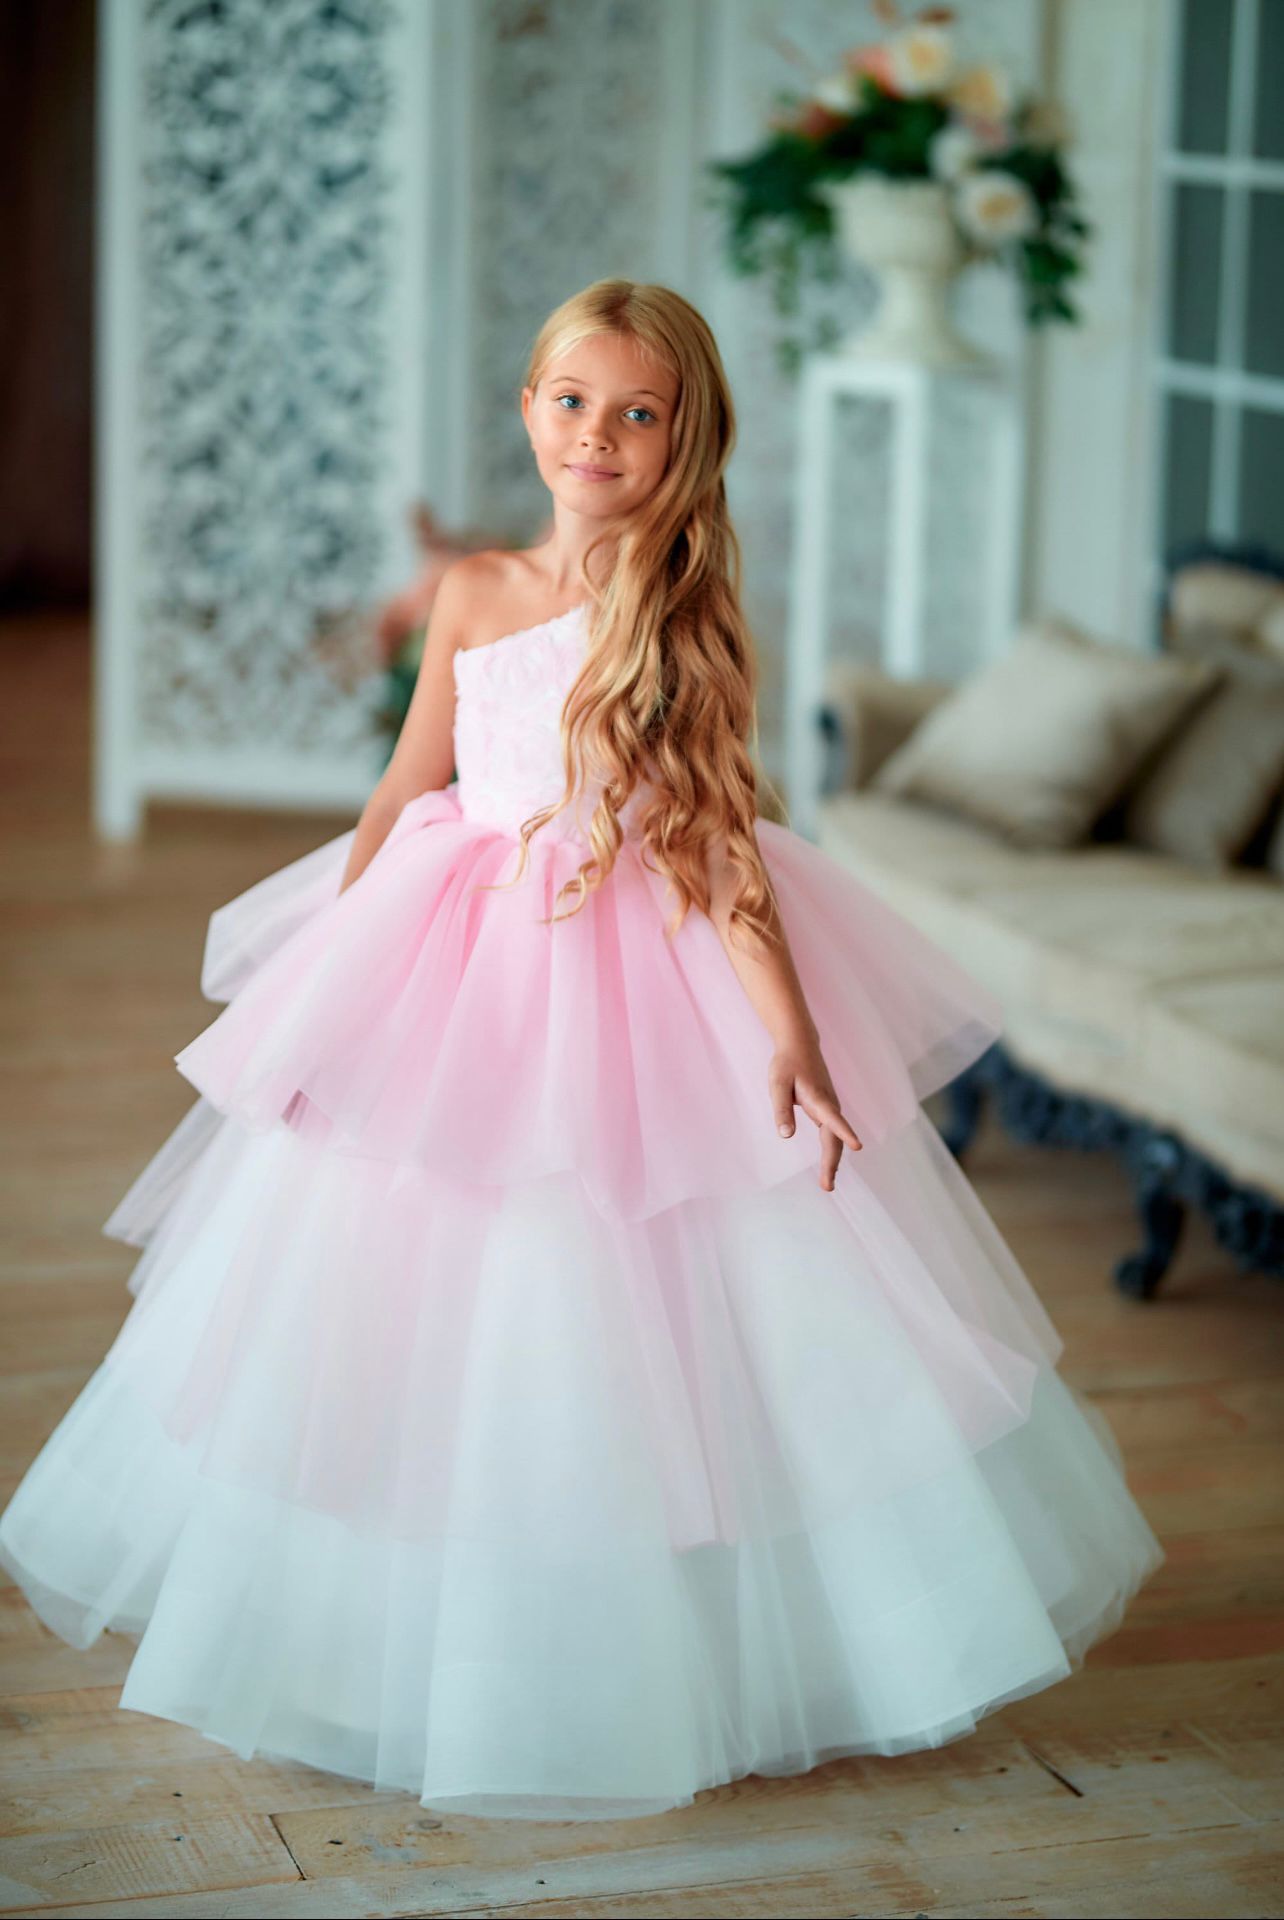 Rochie roz eleganta lunga de ocazie pentru fete - Teresa